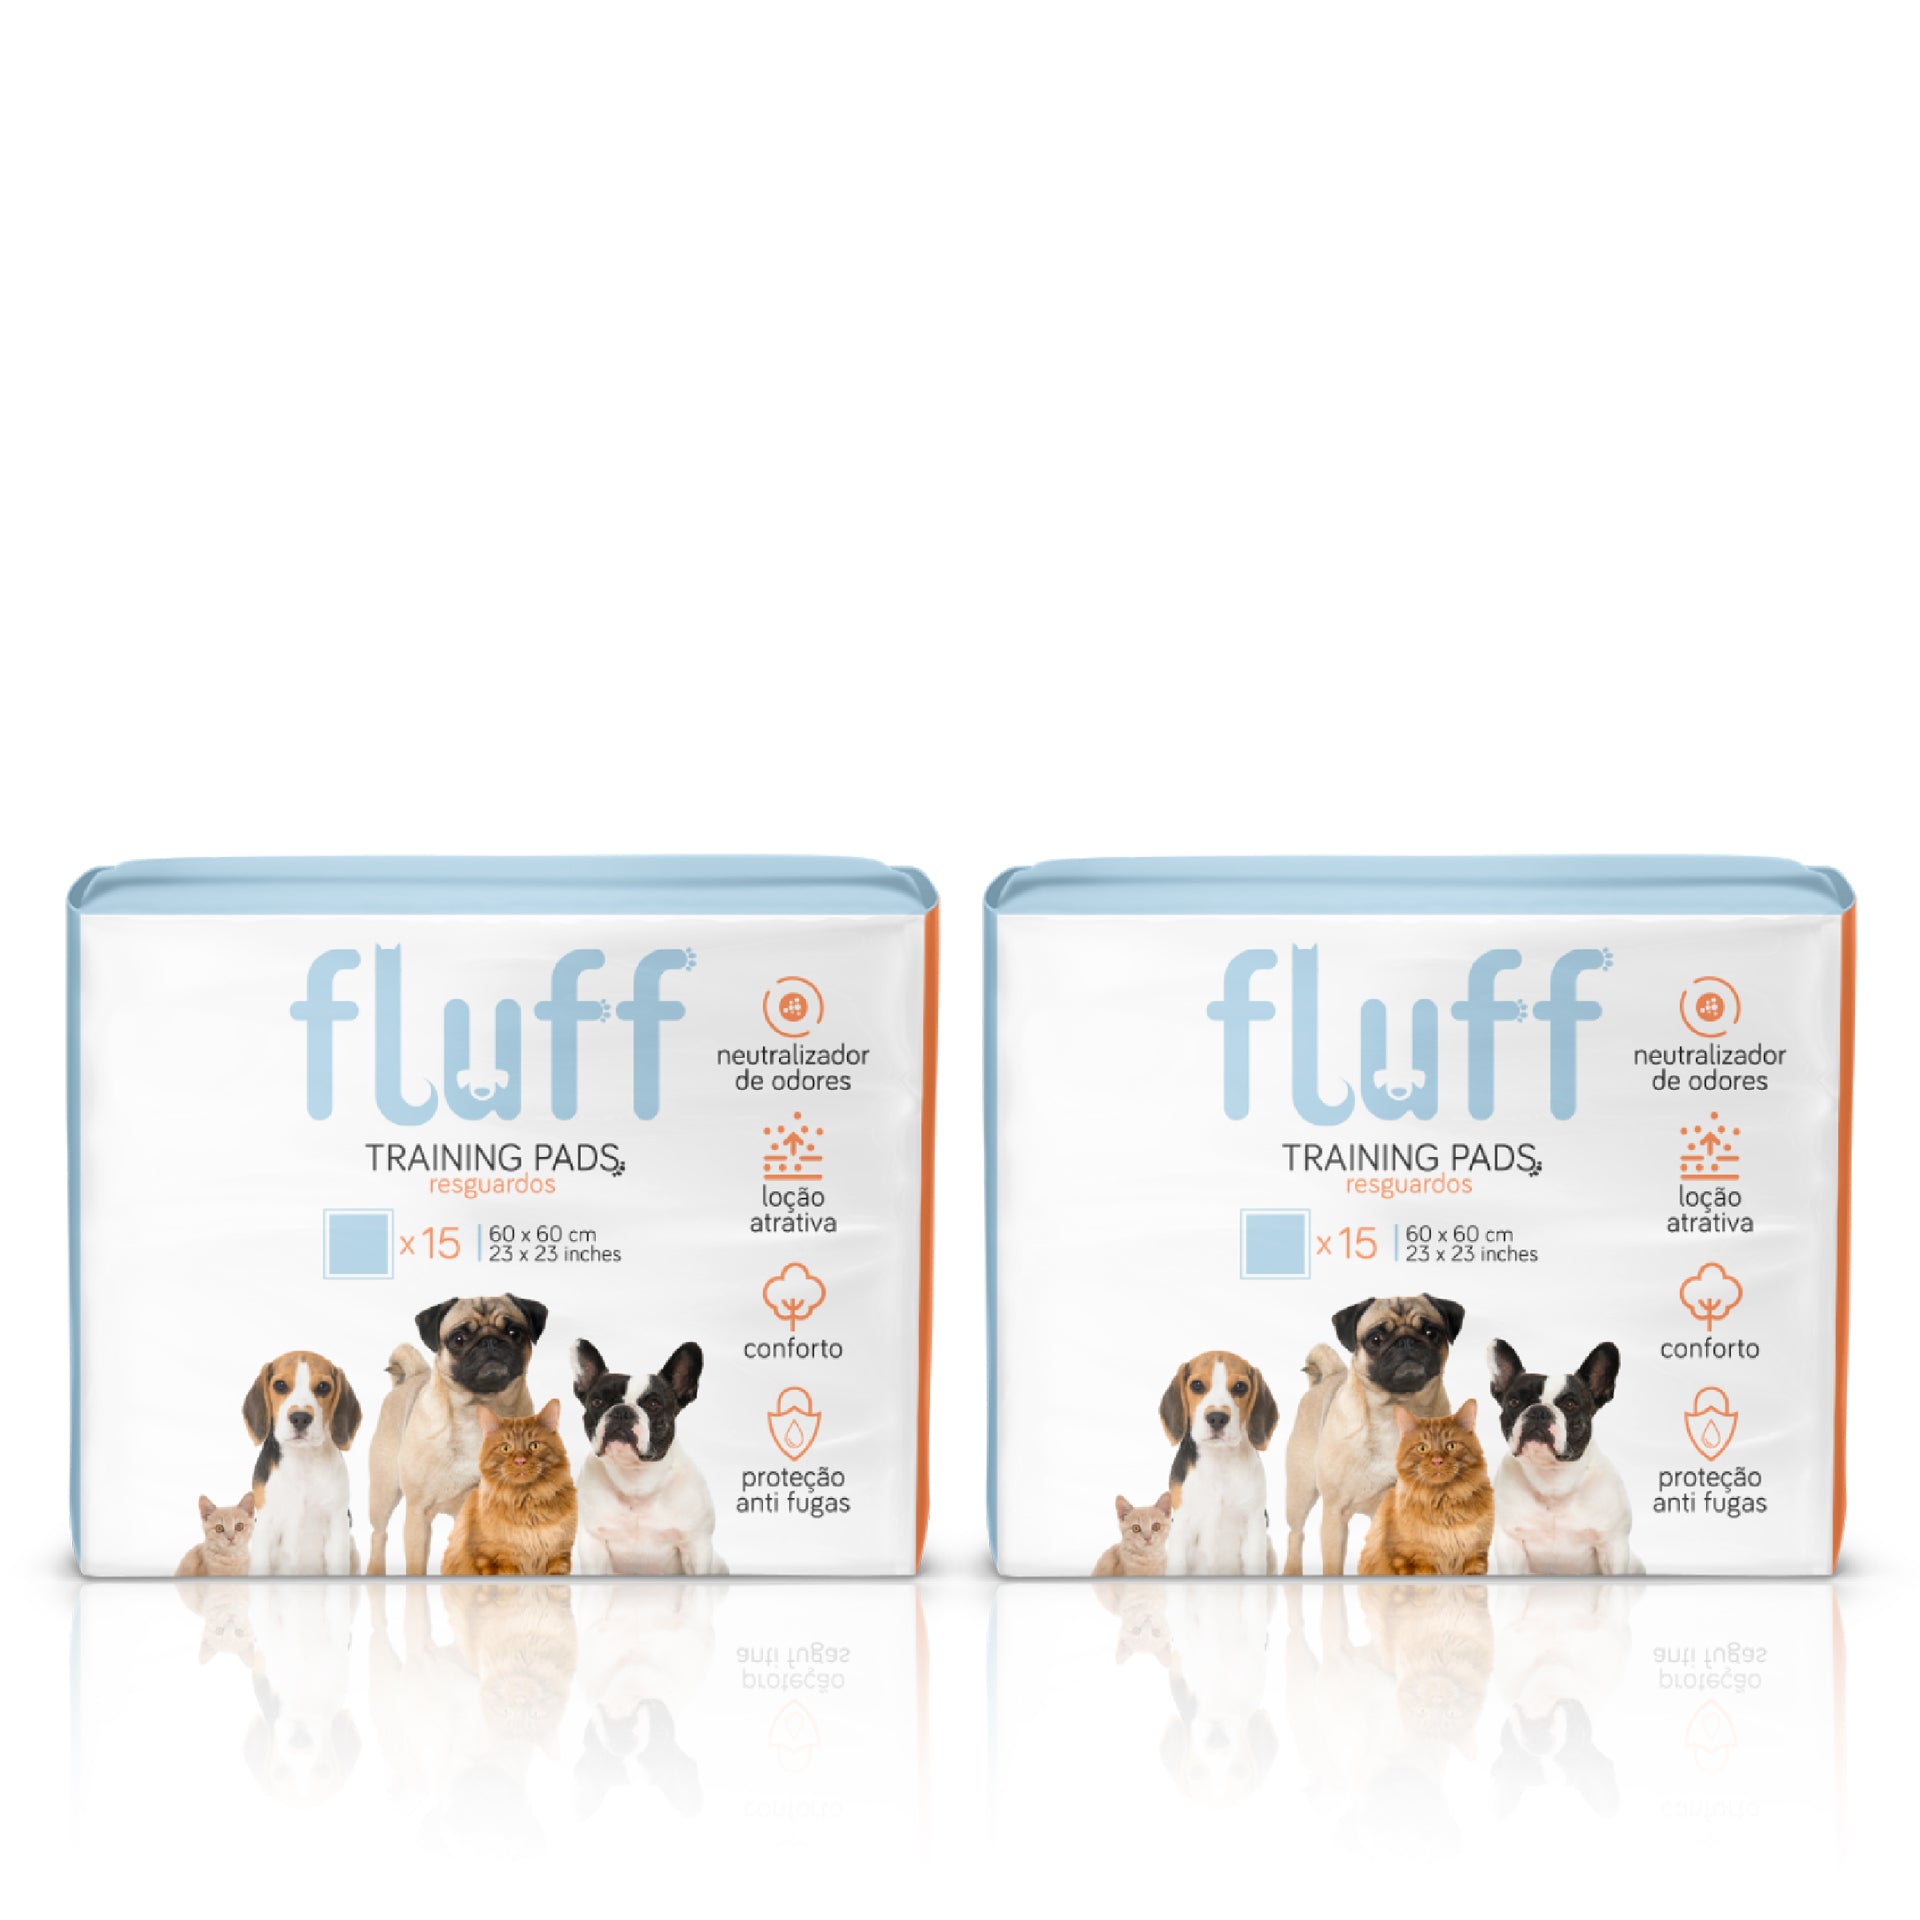 Fluff Resguardos Animal 60 x 60 cm 15 un - Pack 2 x 15 un